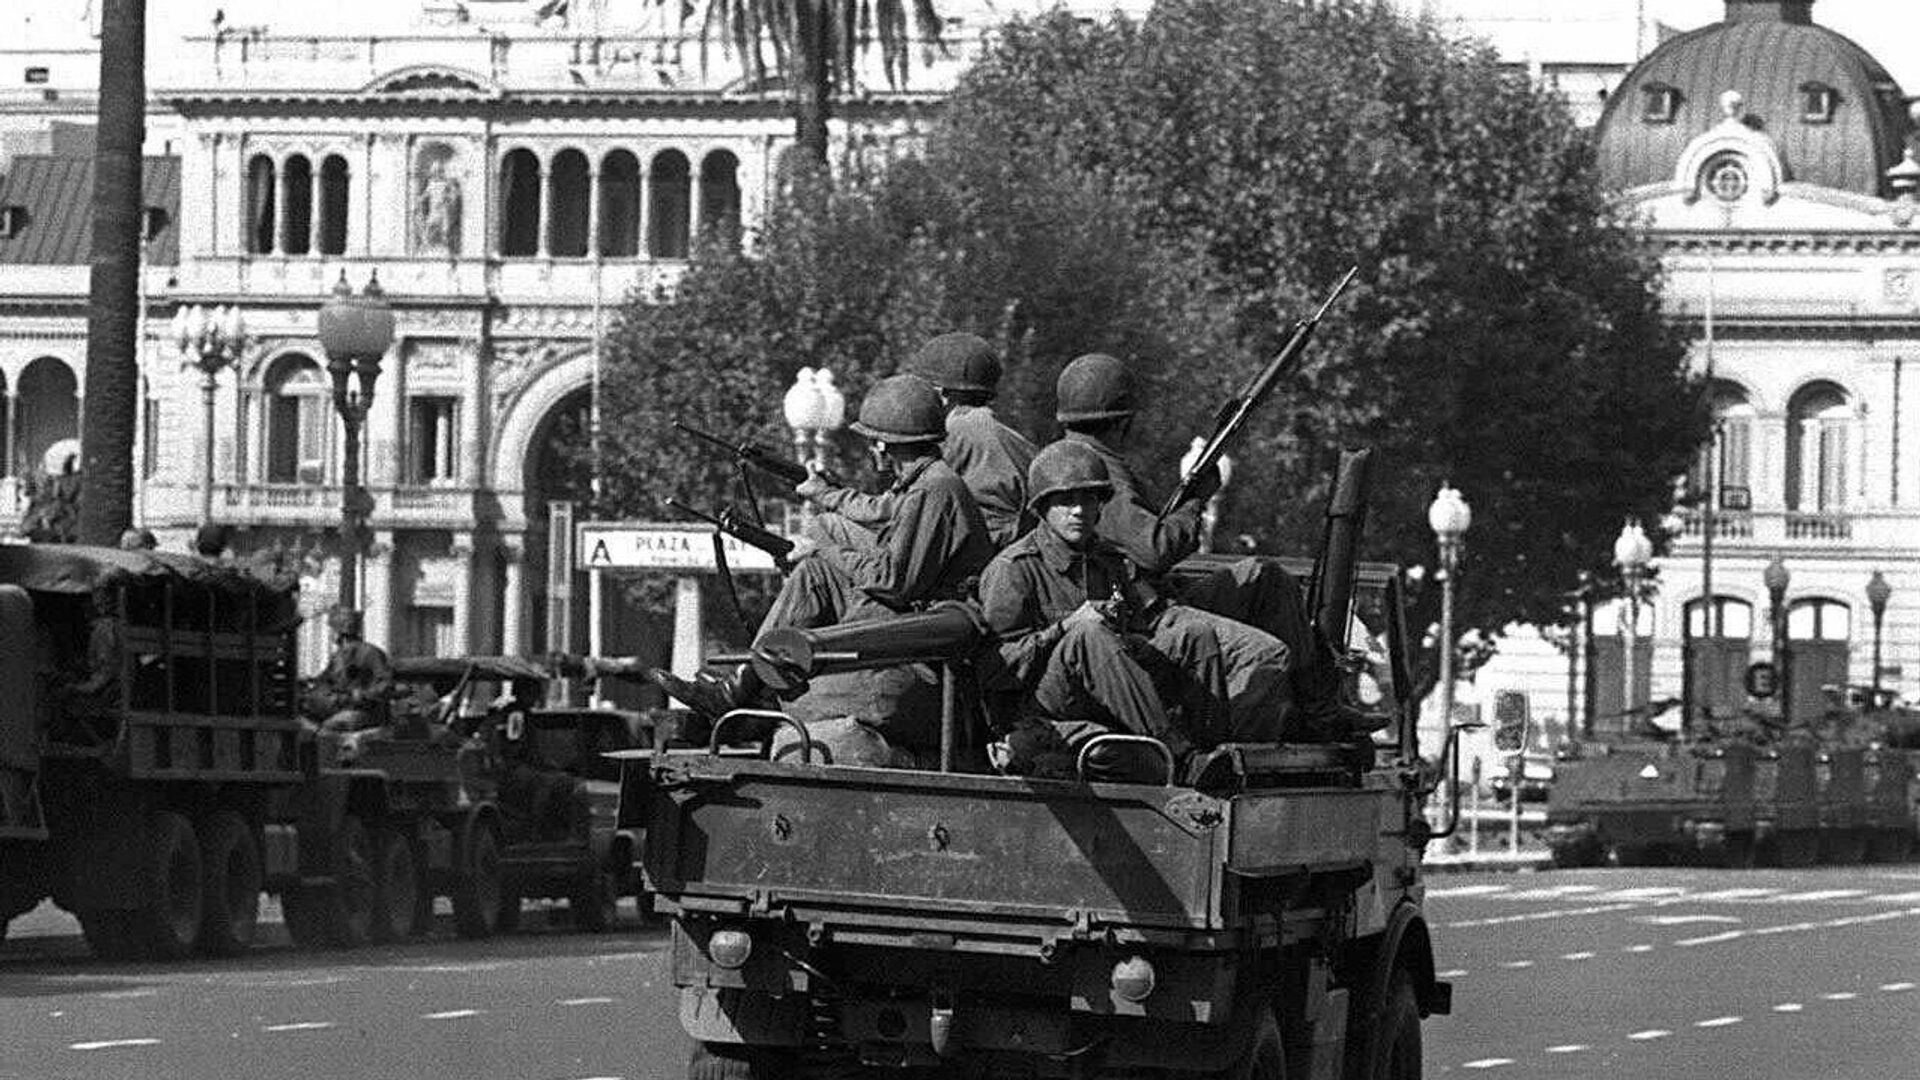 Soldados del ejército patrullan la Plaza de Mayo de Buenos Aires el 24 de marzo de 1976 - Sputnik Mundo, 1920, 24.03.2021